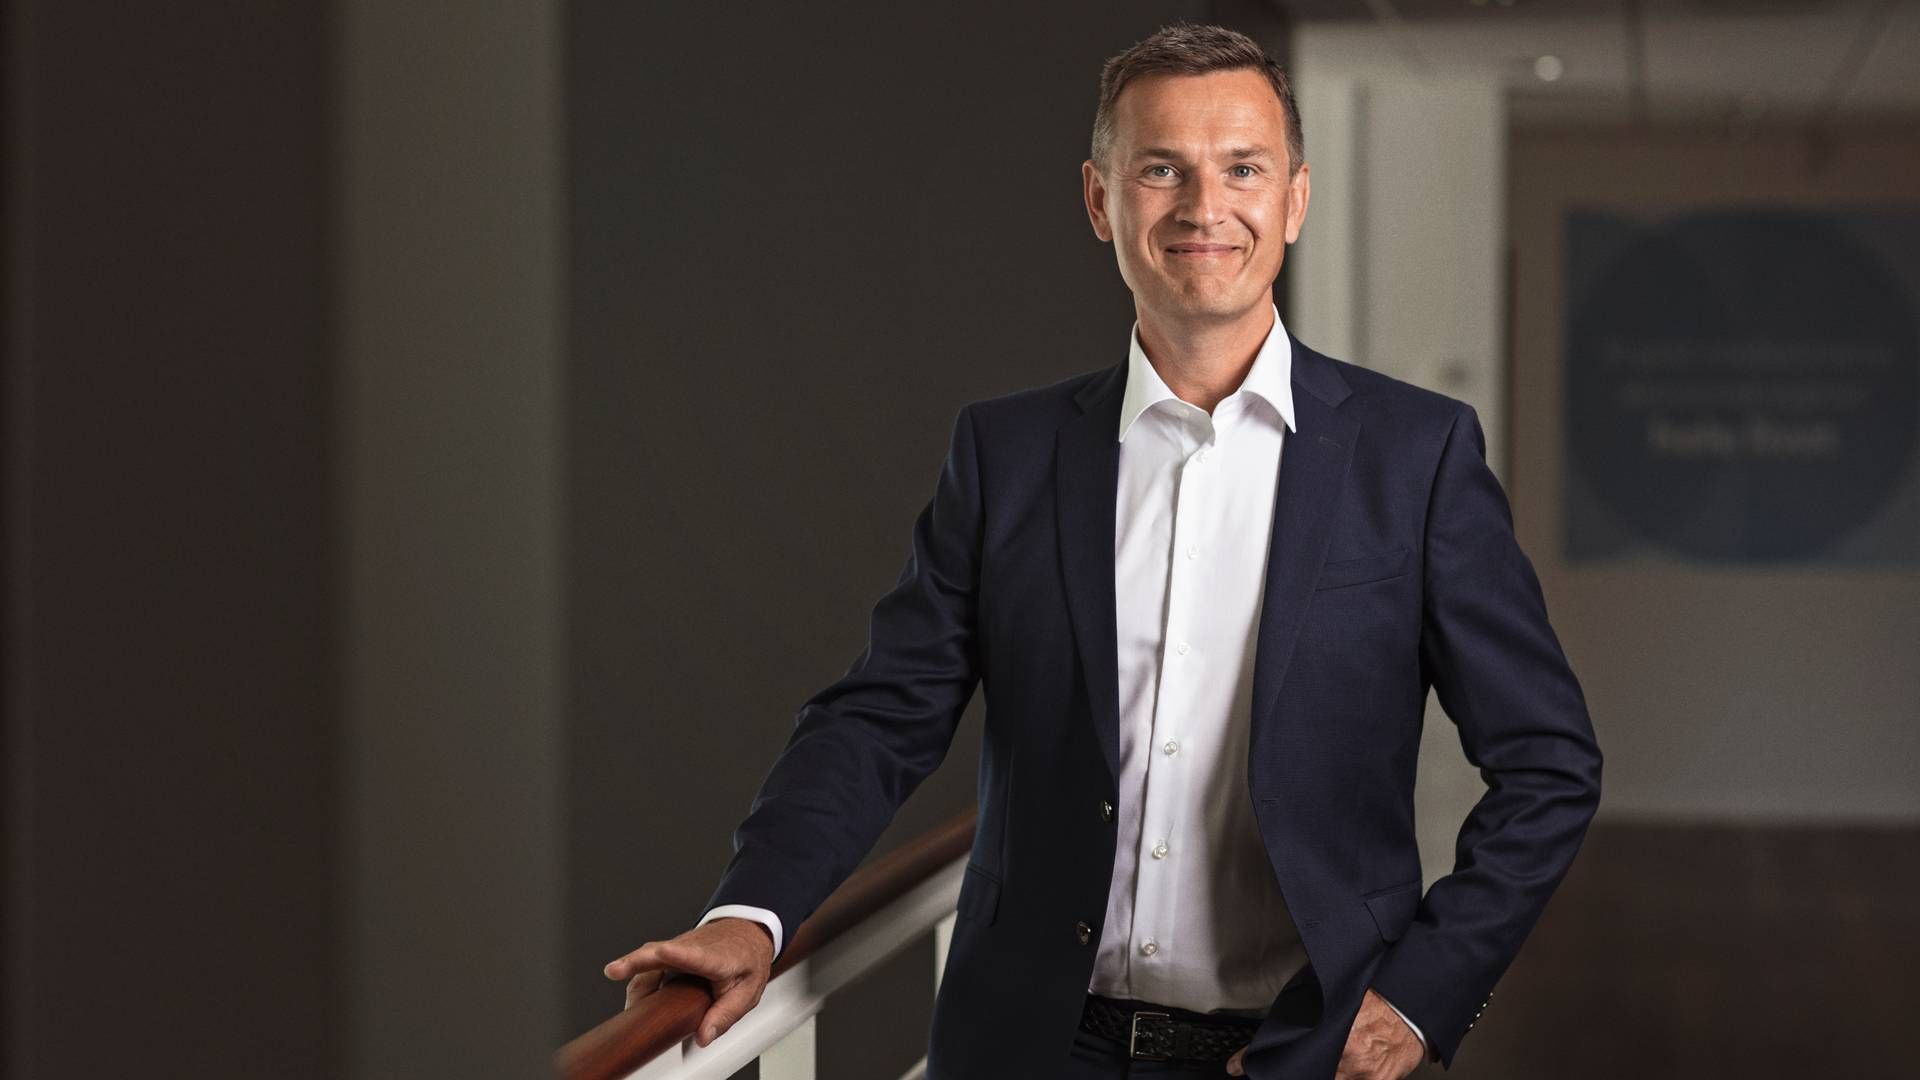 Selskaber bør redegøre for lønspring, mener Anders Schelde, investeringsdirektør i Akademikerpension. | Foto: Pr/mp Pension